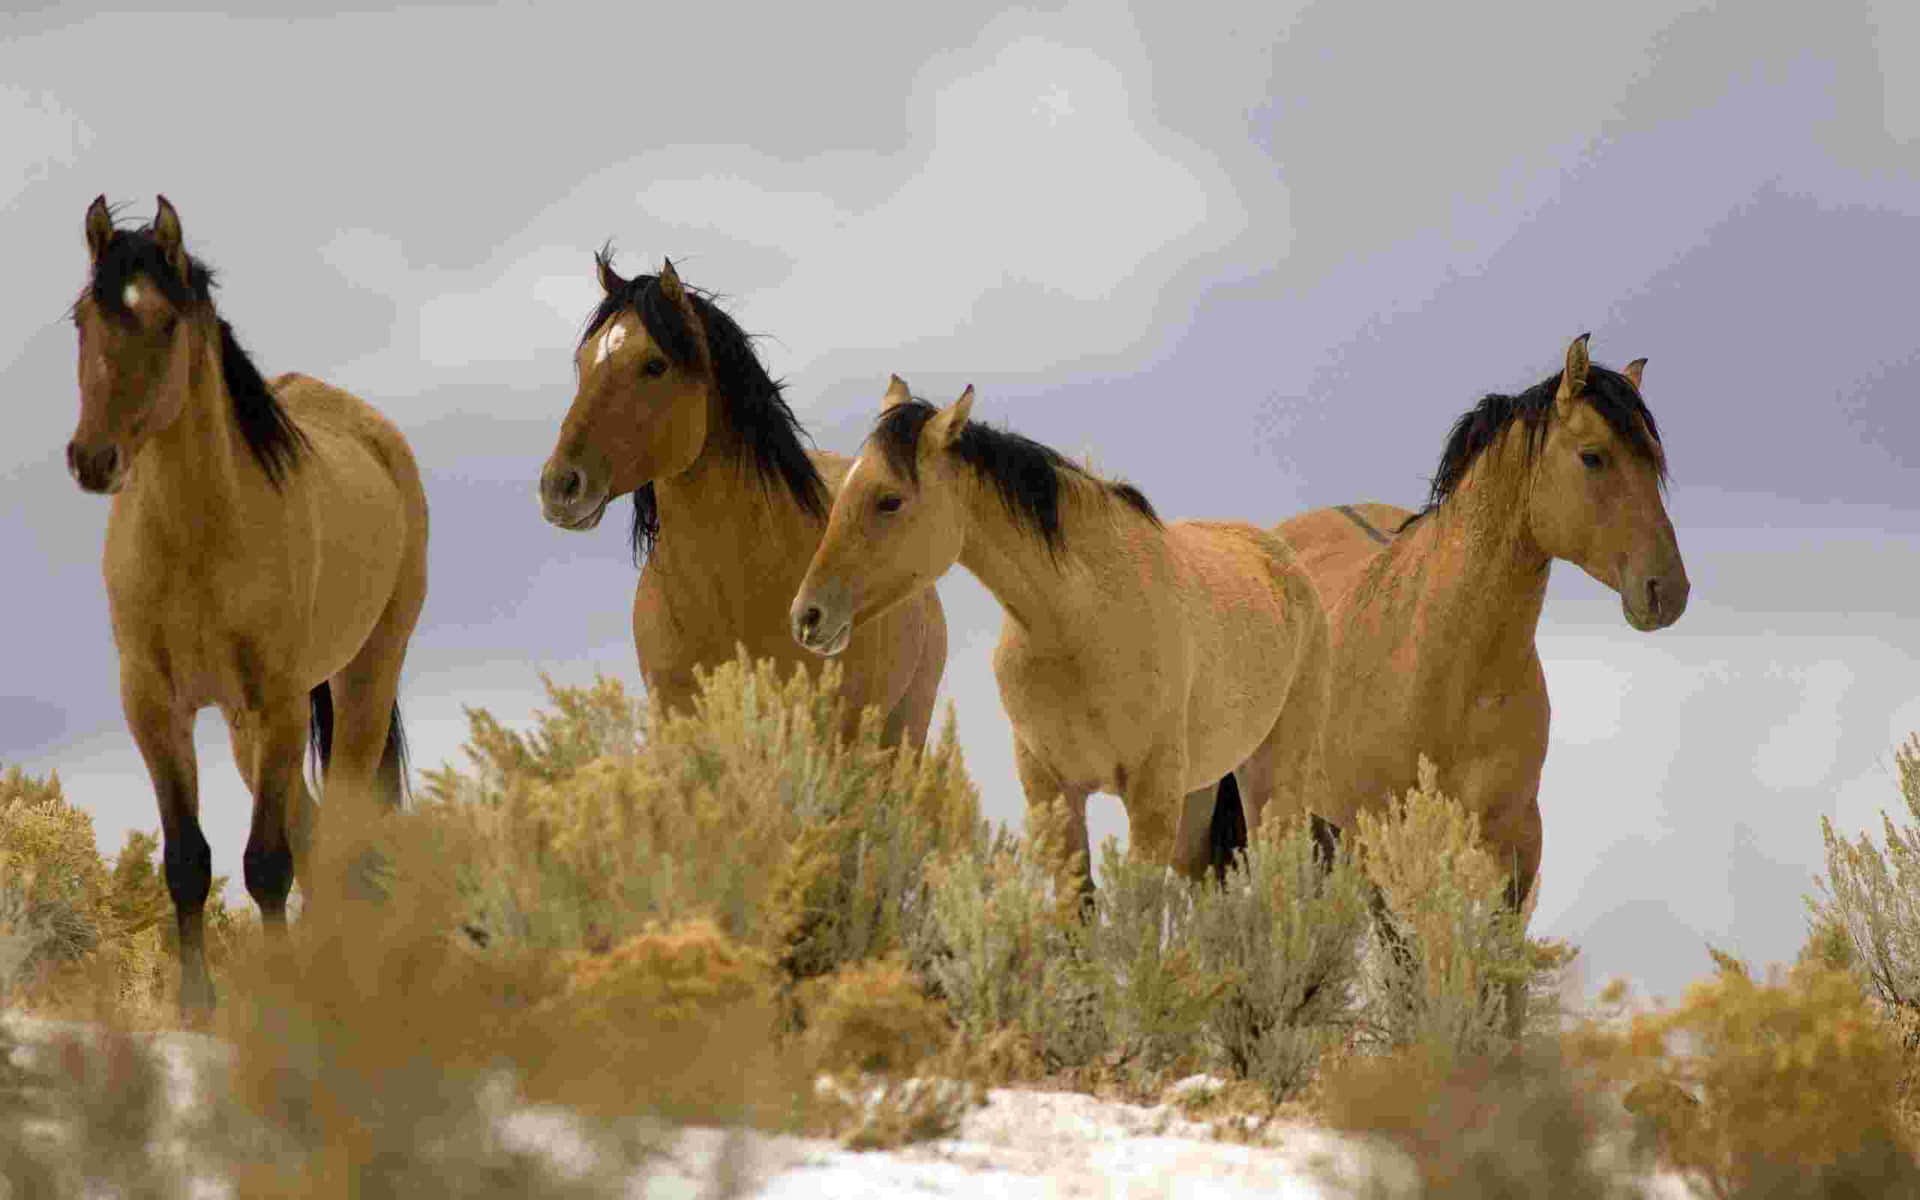 Imagende Un Caballo Mustang Y Cuatro Caballos Marrones.